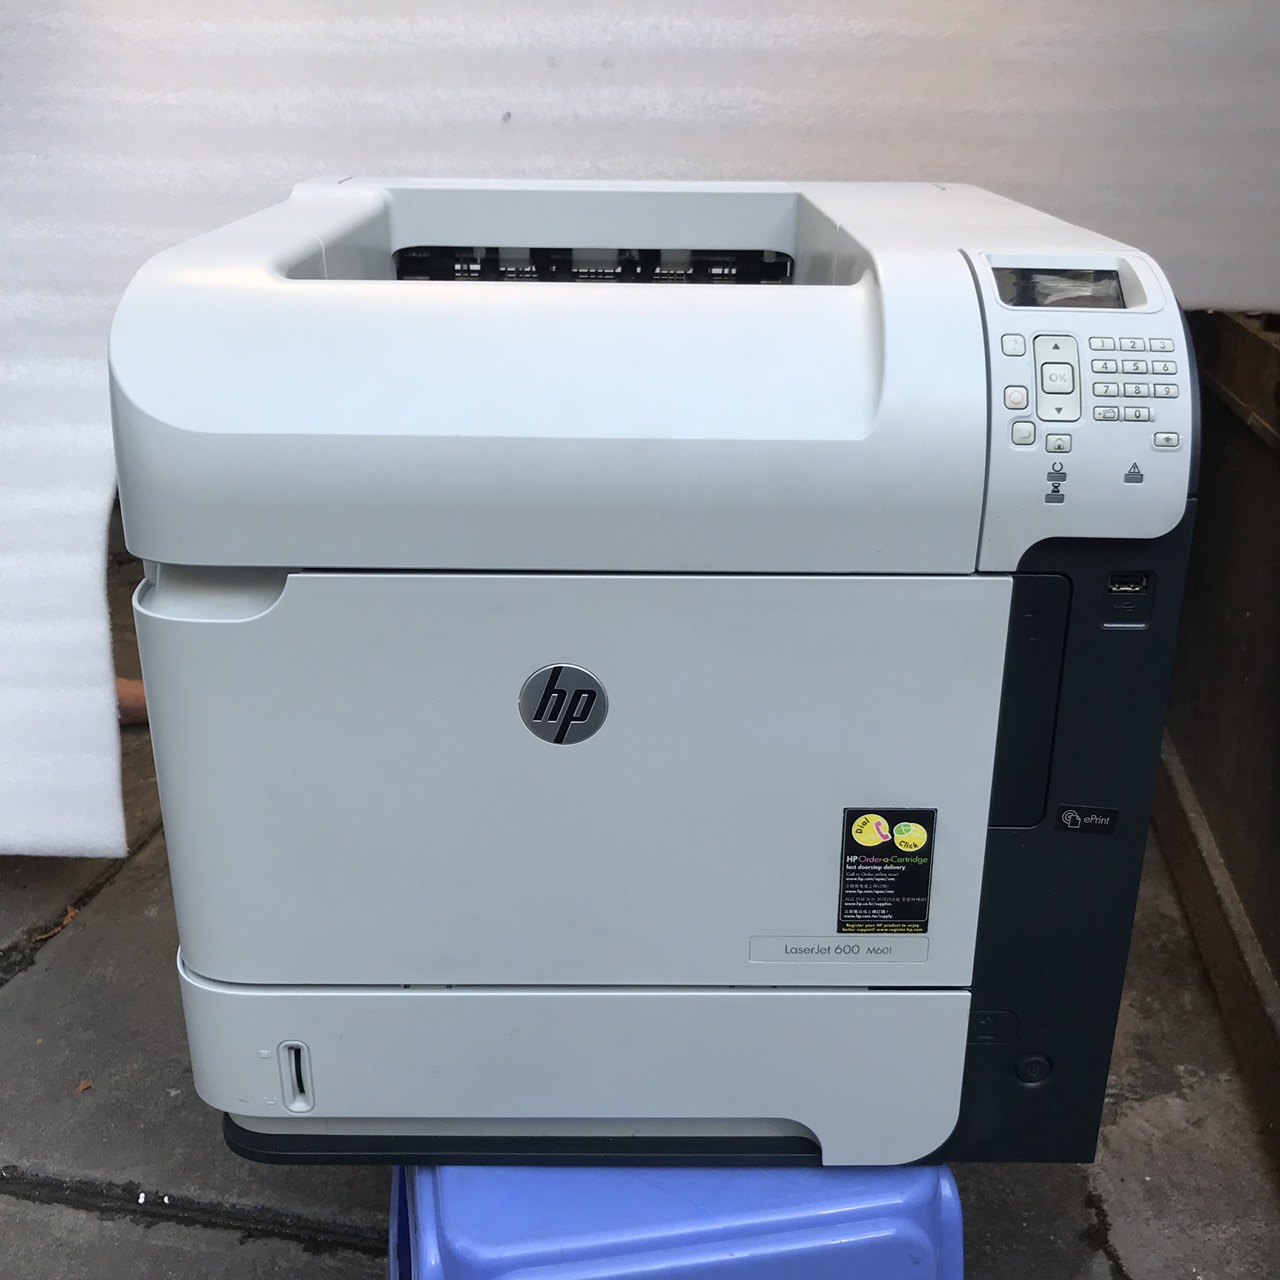 Máy in cũ HP LaserJet Enterprise 600 Printer M602n (CE991A)